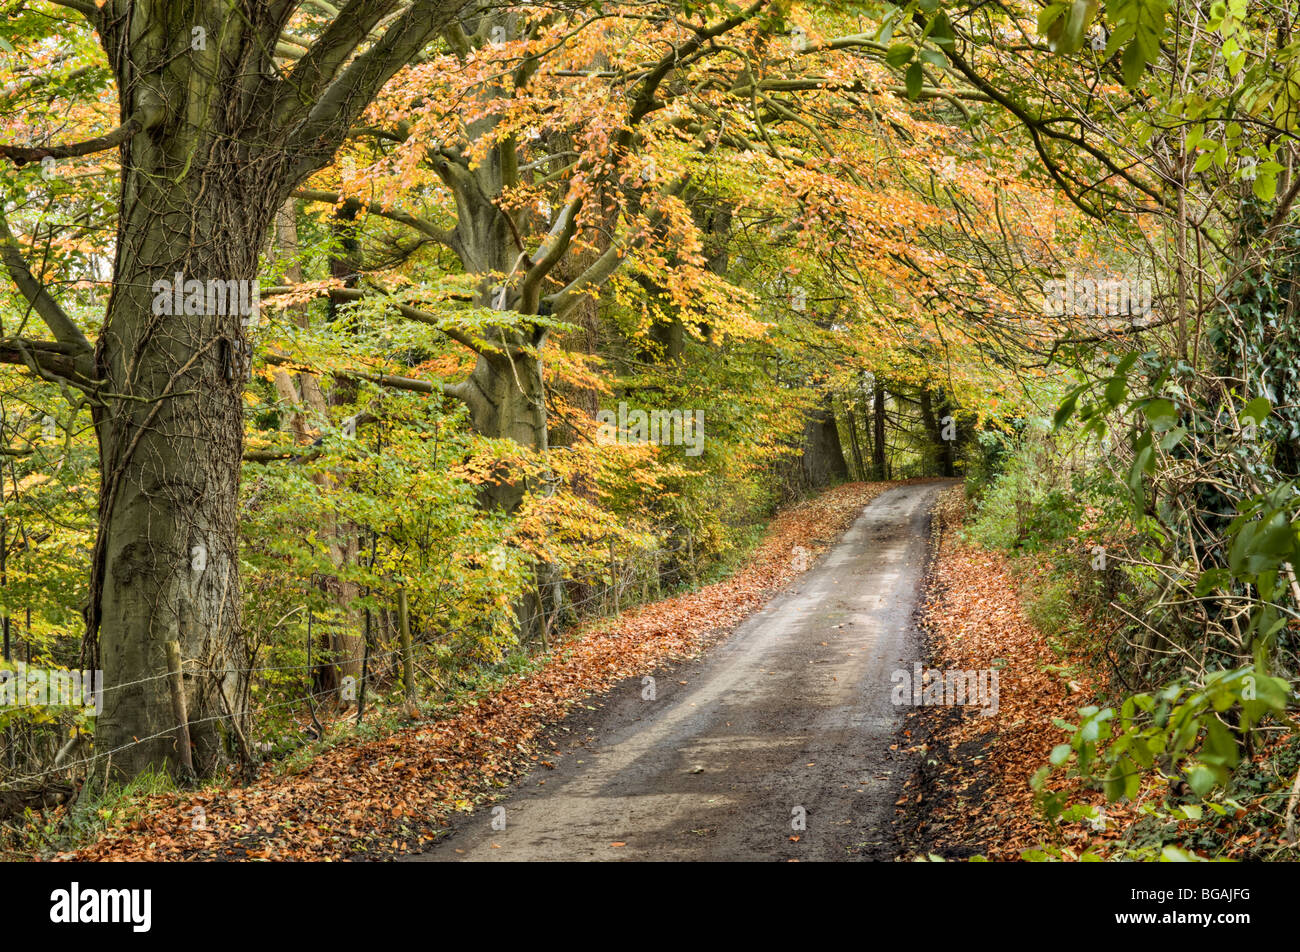 Schöne Herbstfärbung, von Bäumen gesäumten Gasse in der Nähe von Castle Combe Dorf wo Ästen überwuchert haben, in form eines Tunnels getroffen Stockfoto